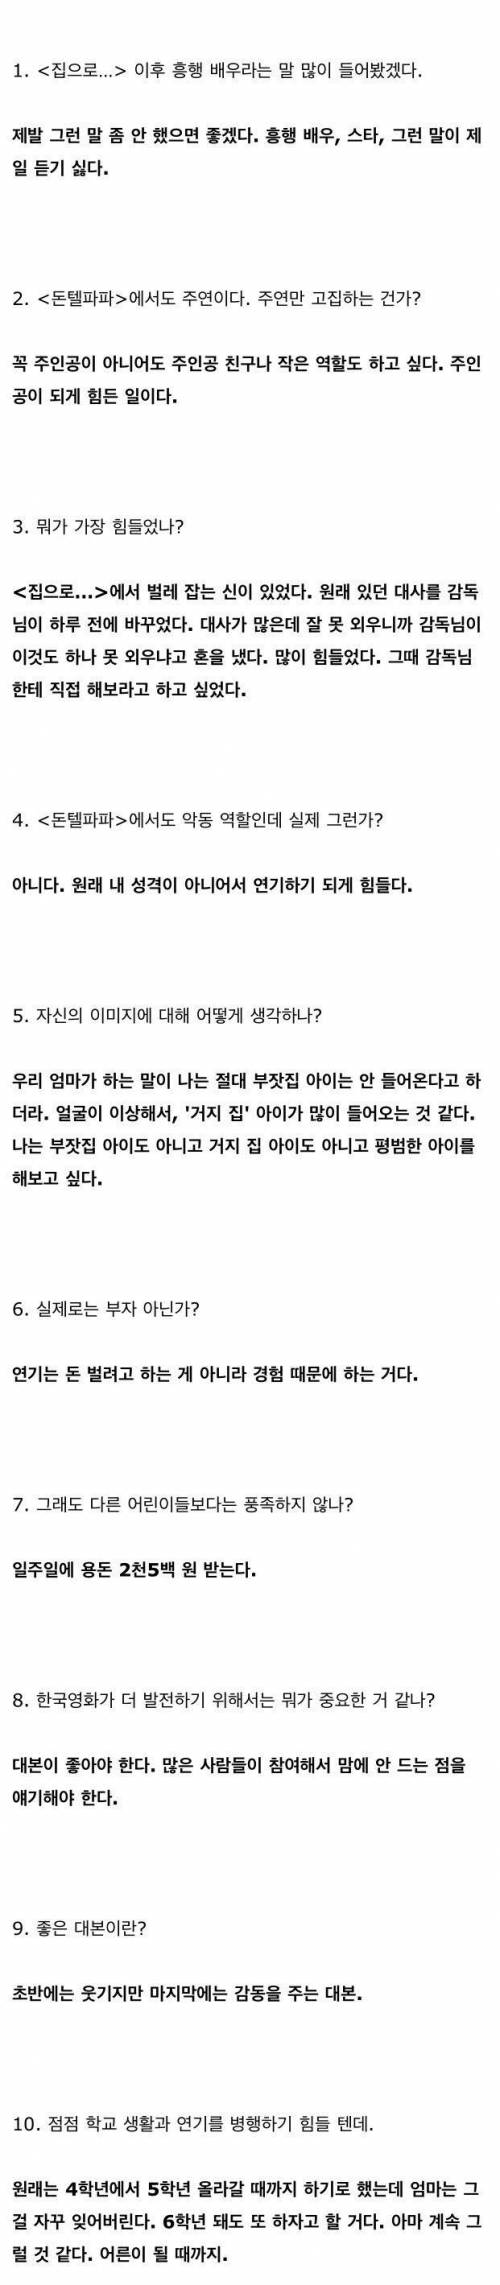 유승호가 초등학교 5학년때 했던 인터뷰..jpg